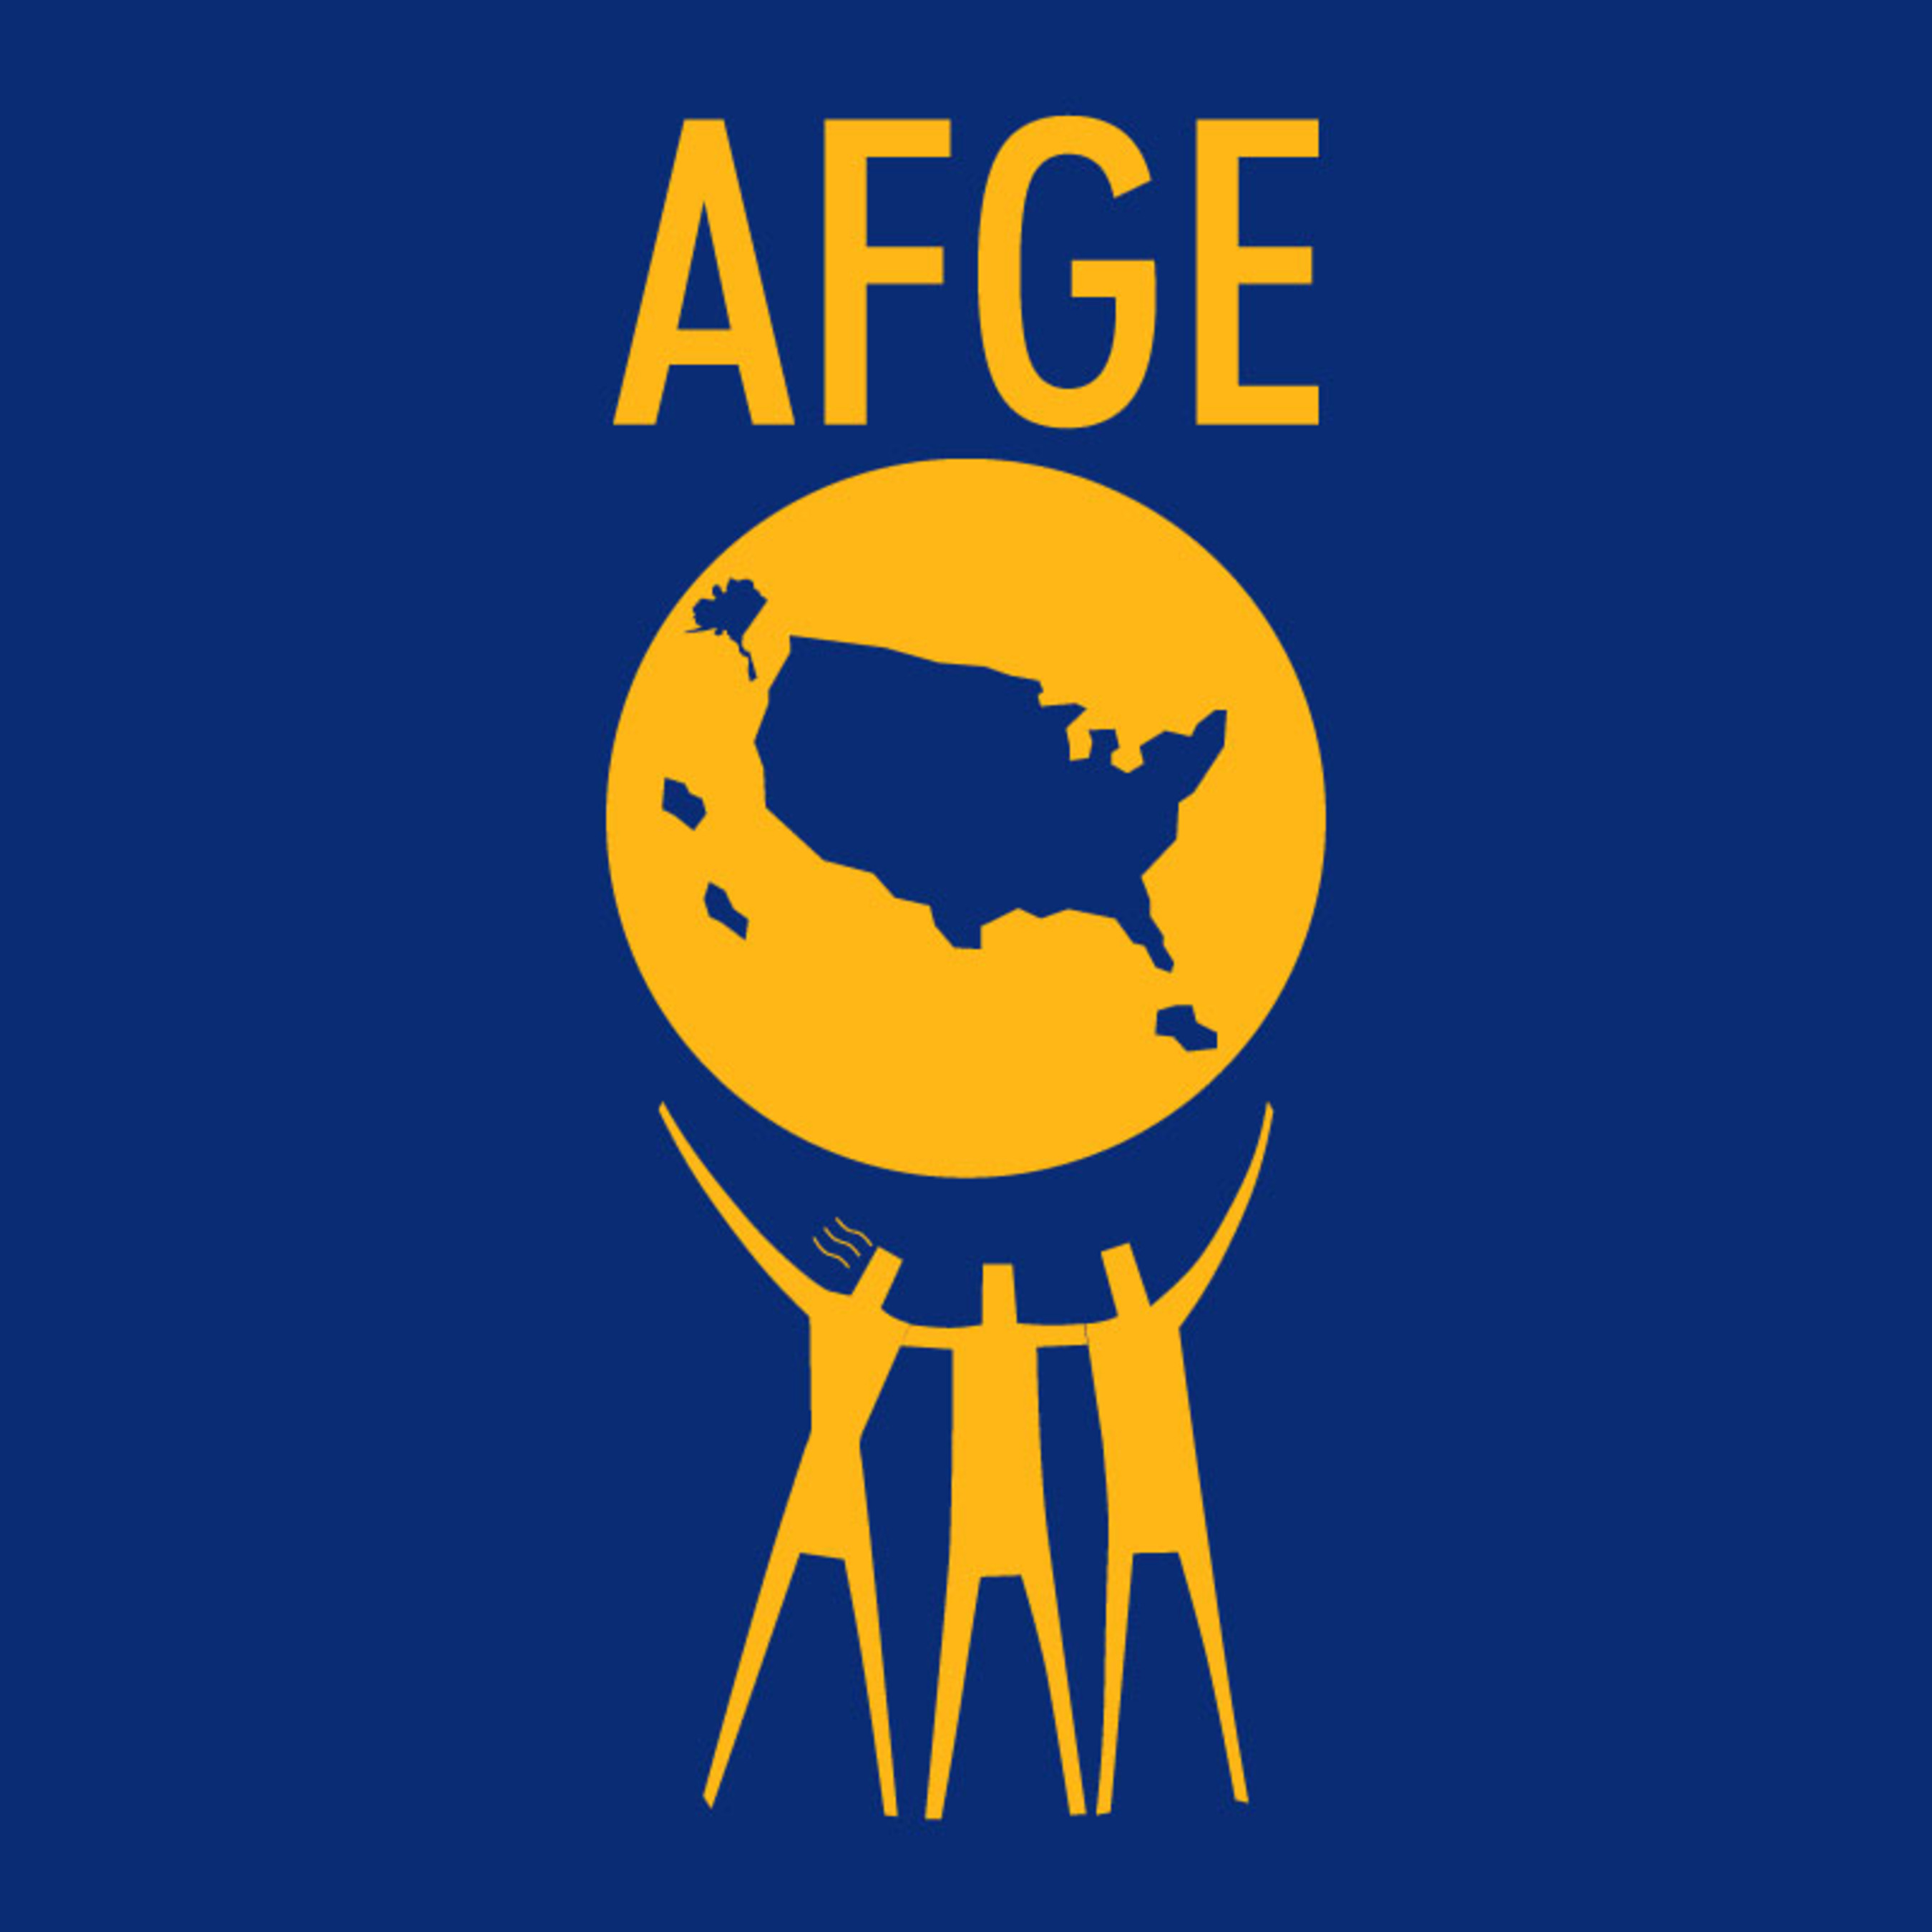 AFGE logo. (PRNewsFoto/American Federation of Government Employees) (PRNewsFoto/AMERICAN FEDERATION OF GOV...)